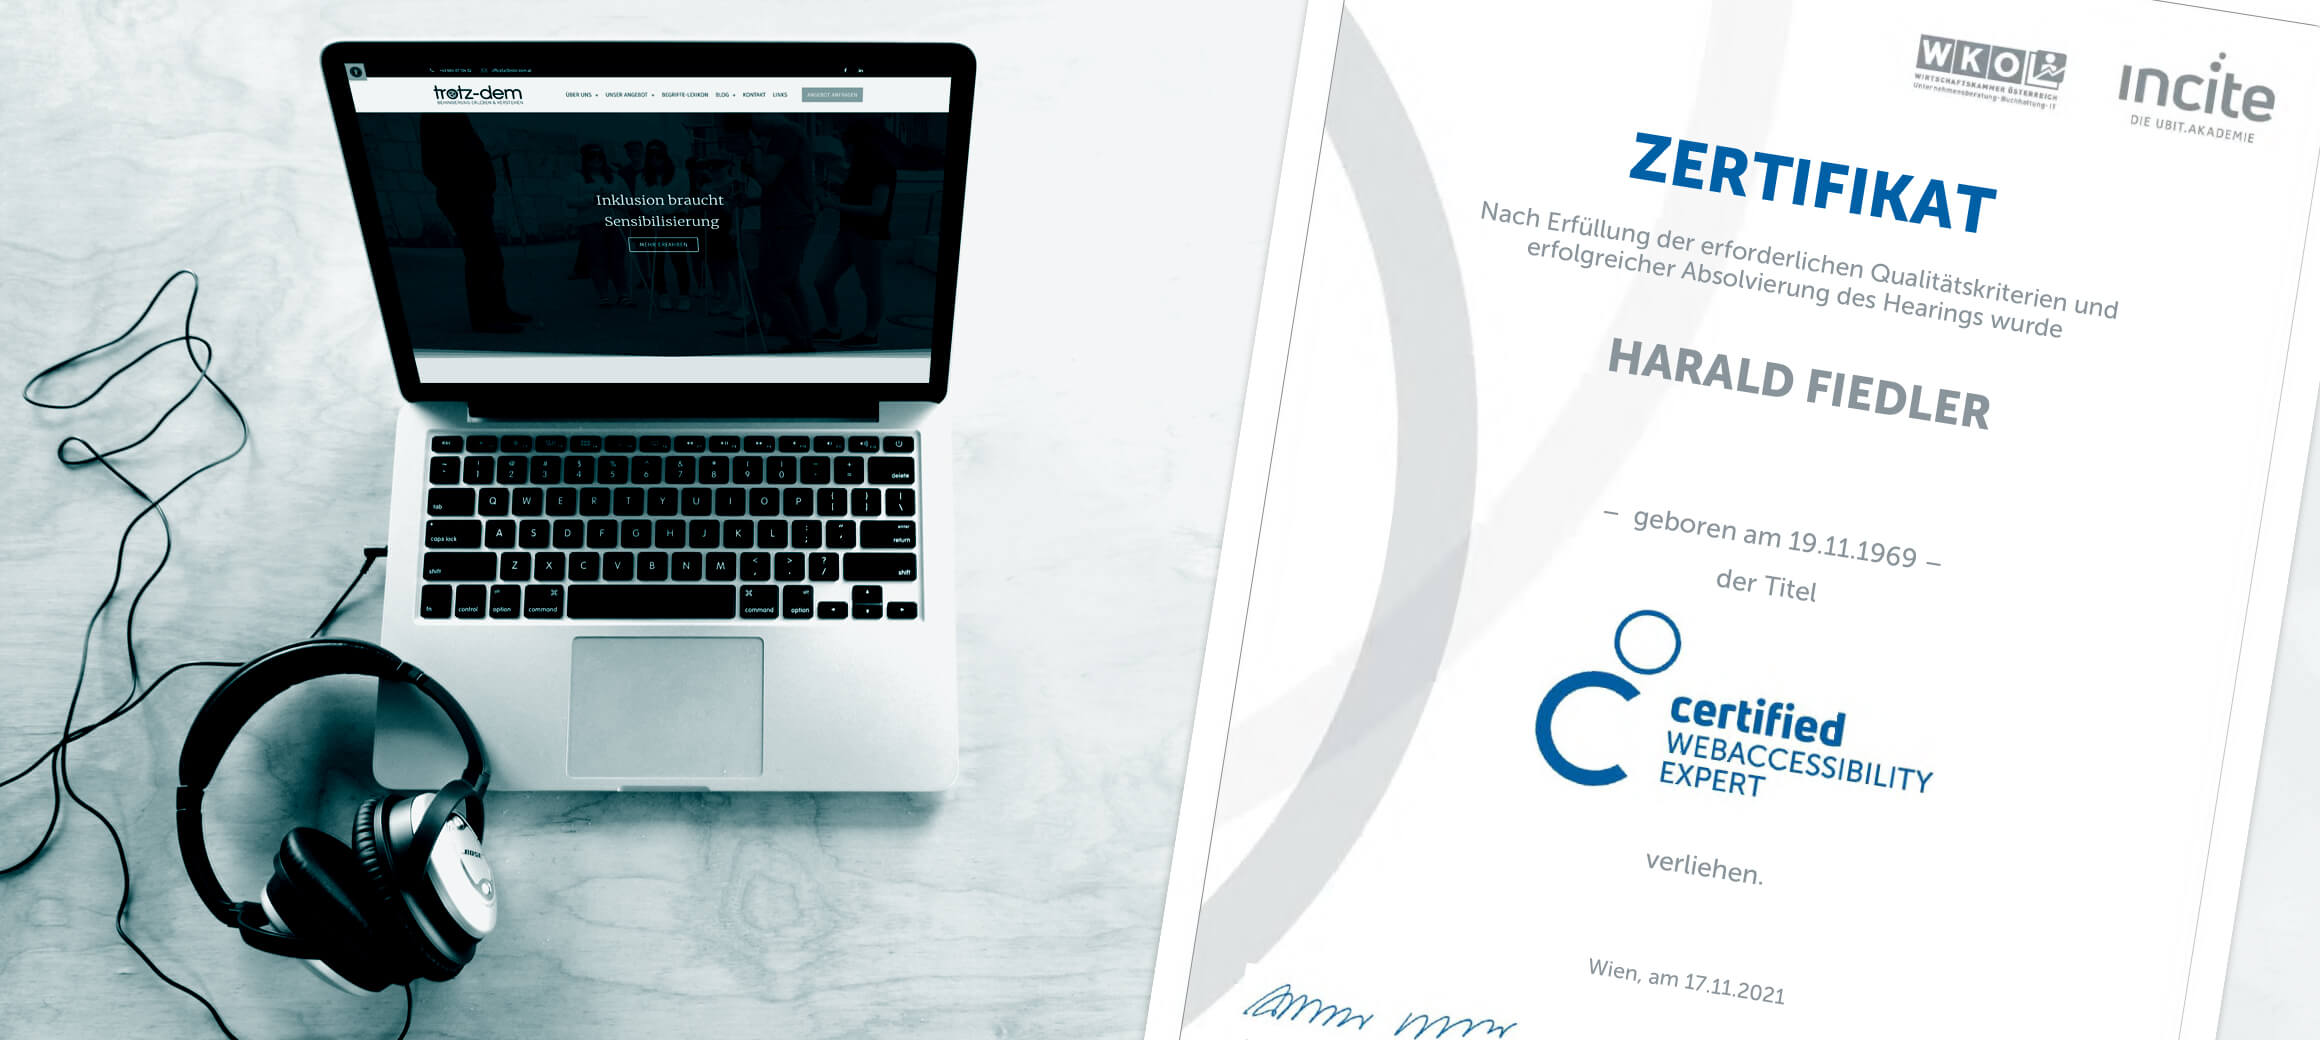 Ein Laptop der die TROTZ-DEM Website zeigt. Daneben liegen Kopfhörer. Rechts im Bild ist Harald's Zertifikat des Web Accessibility Expert zu sehen.